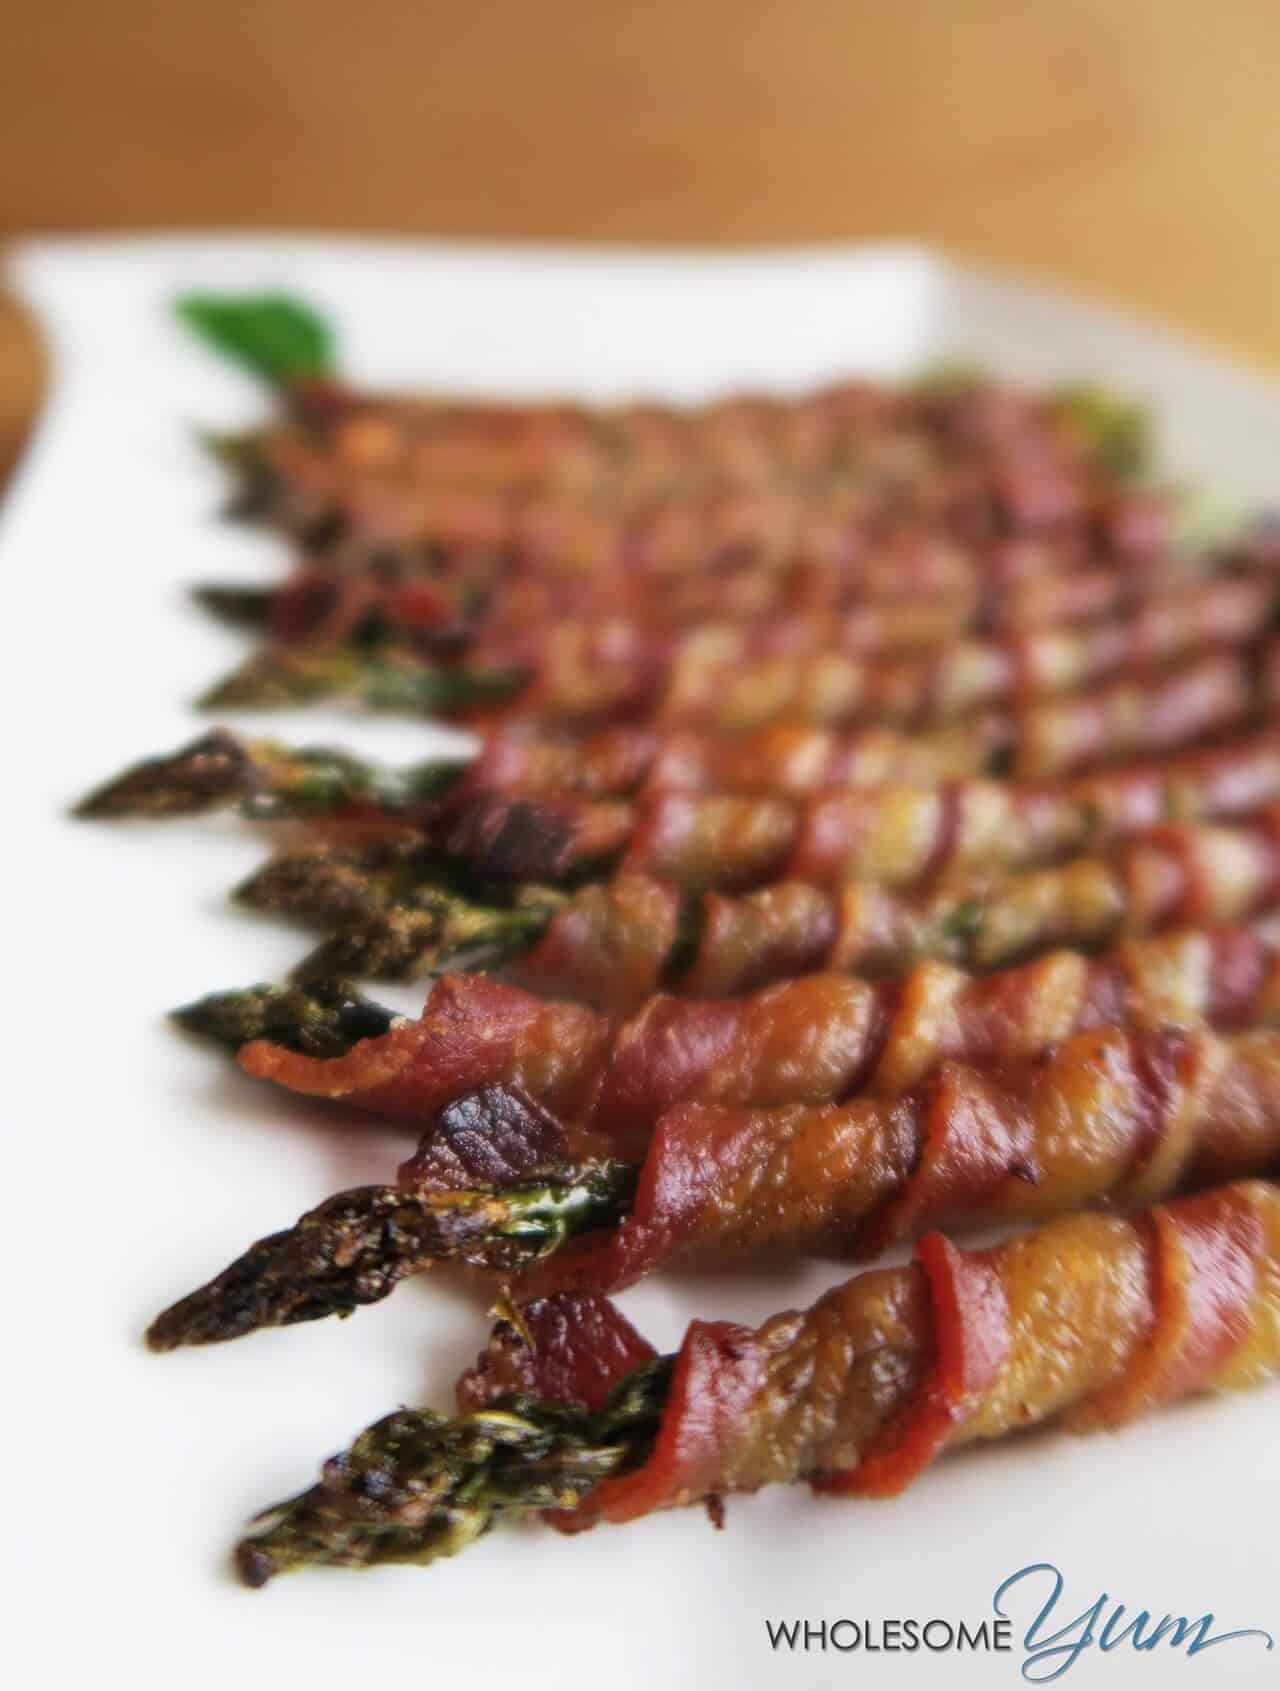 Crispy bacon wrapped asparagus